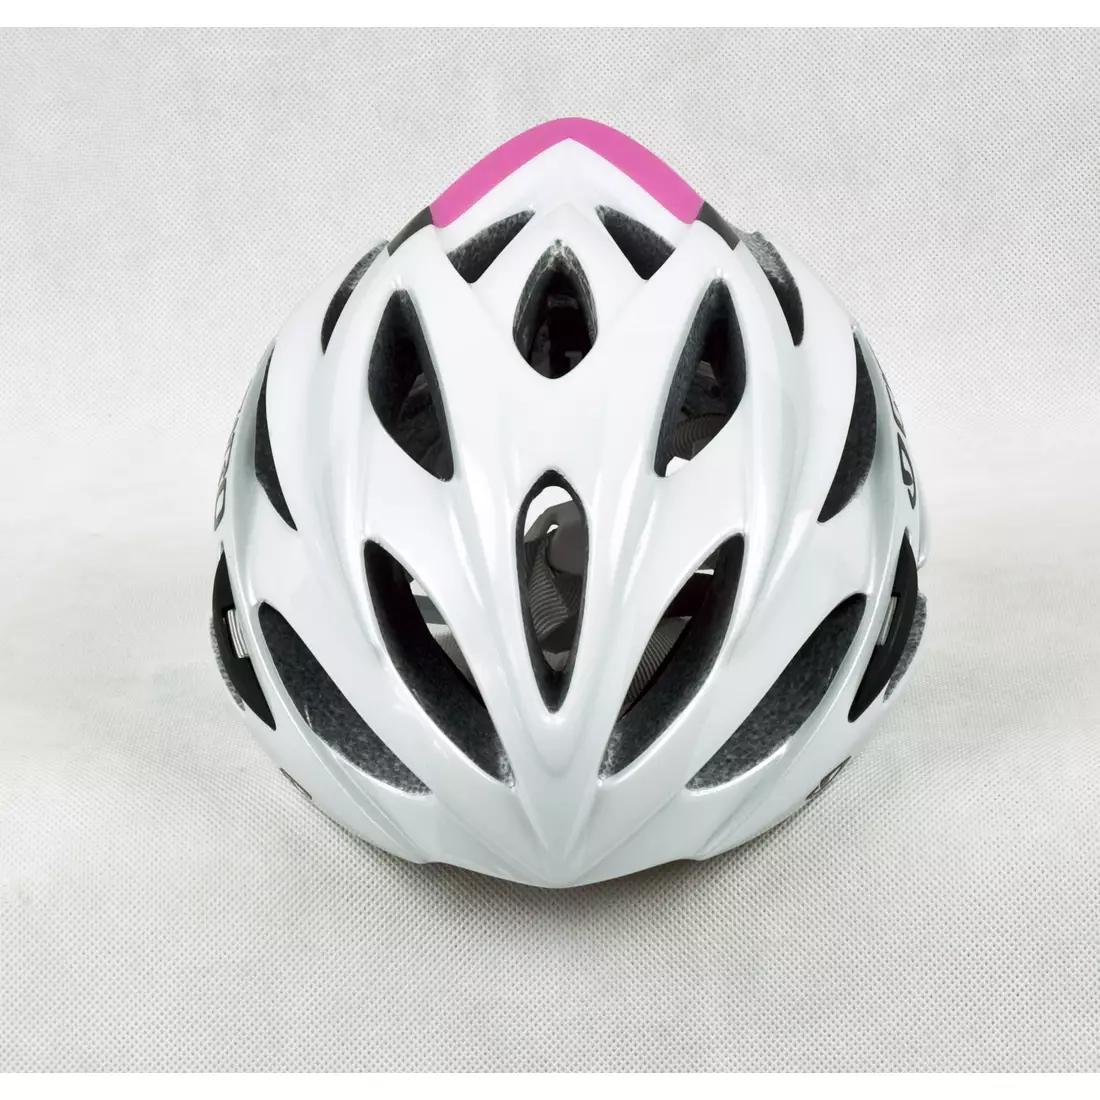 Dámska cyklistická prilba GIRO SONNET, biela a ružová